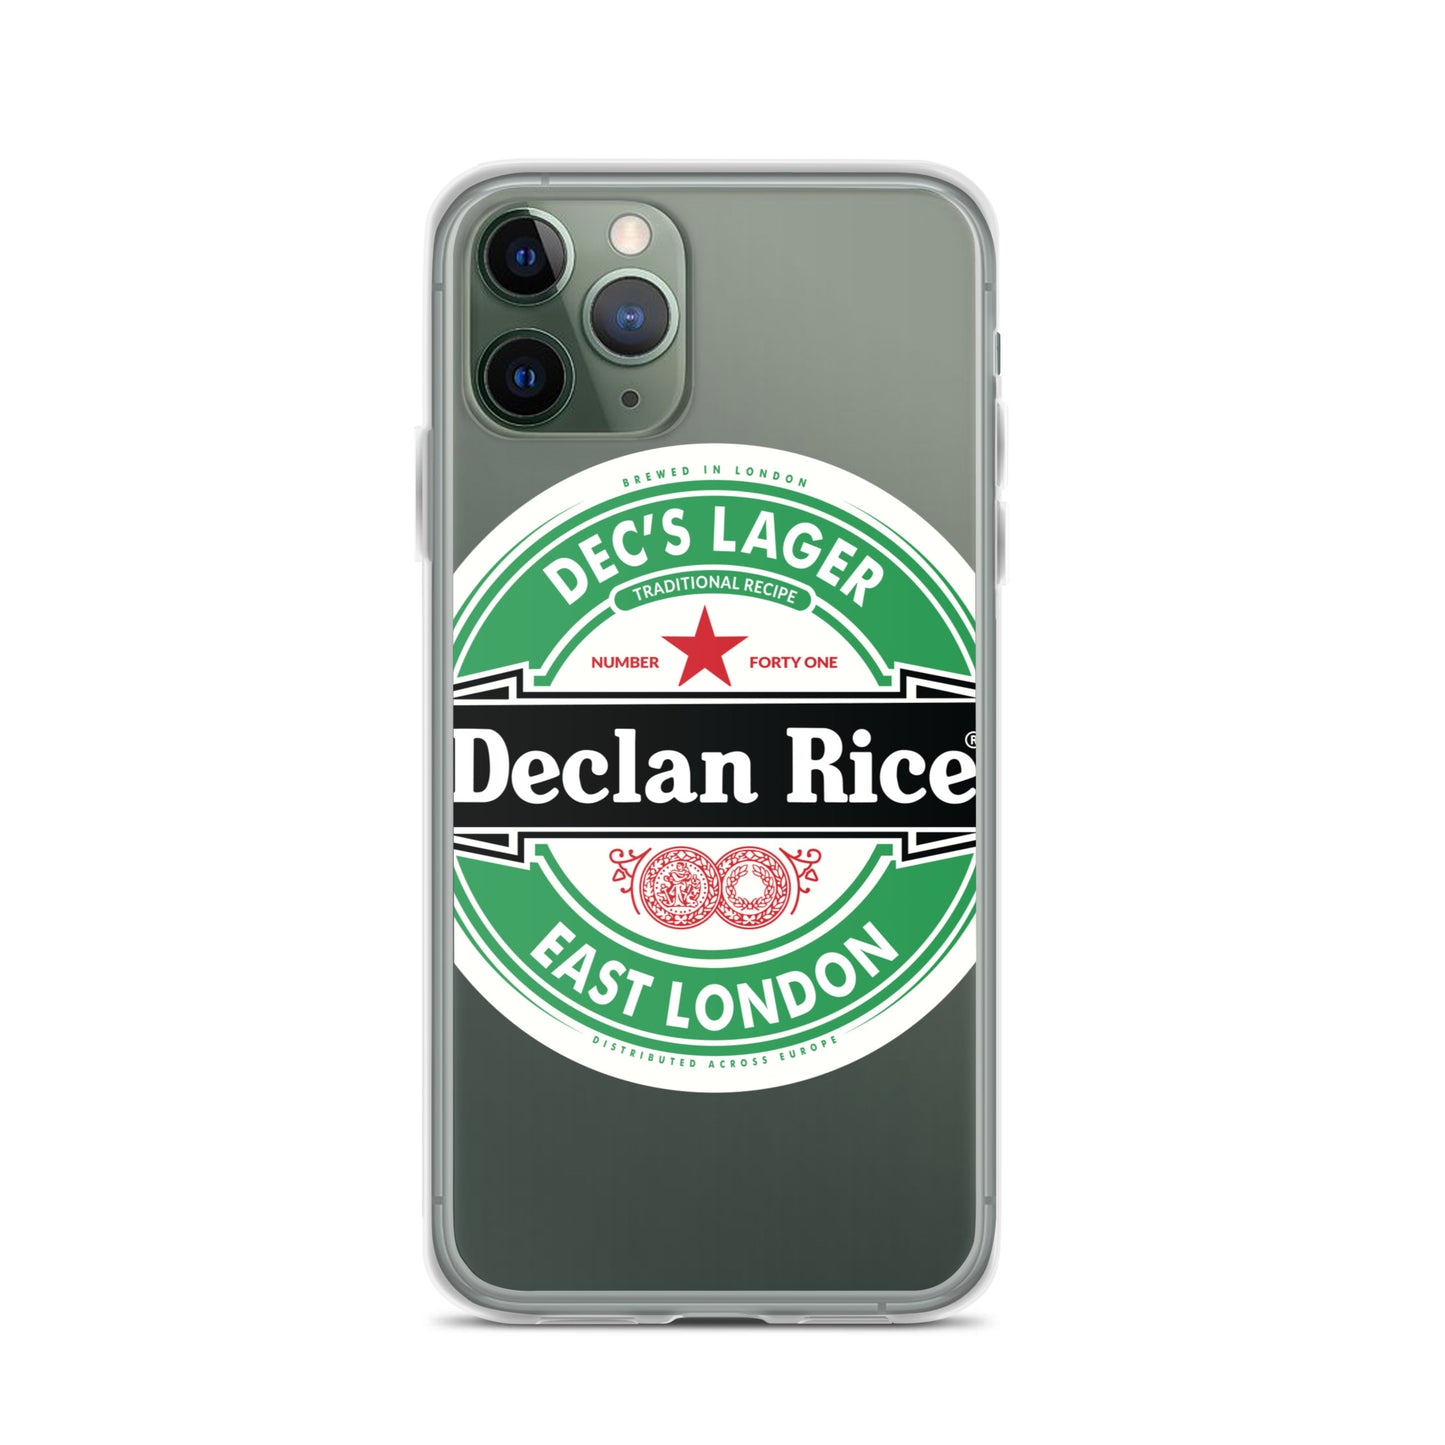 Dec's Lager iPhone Case